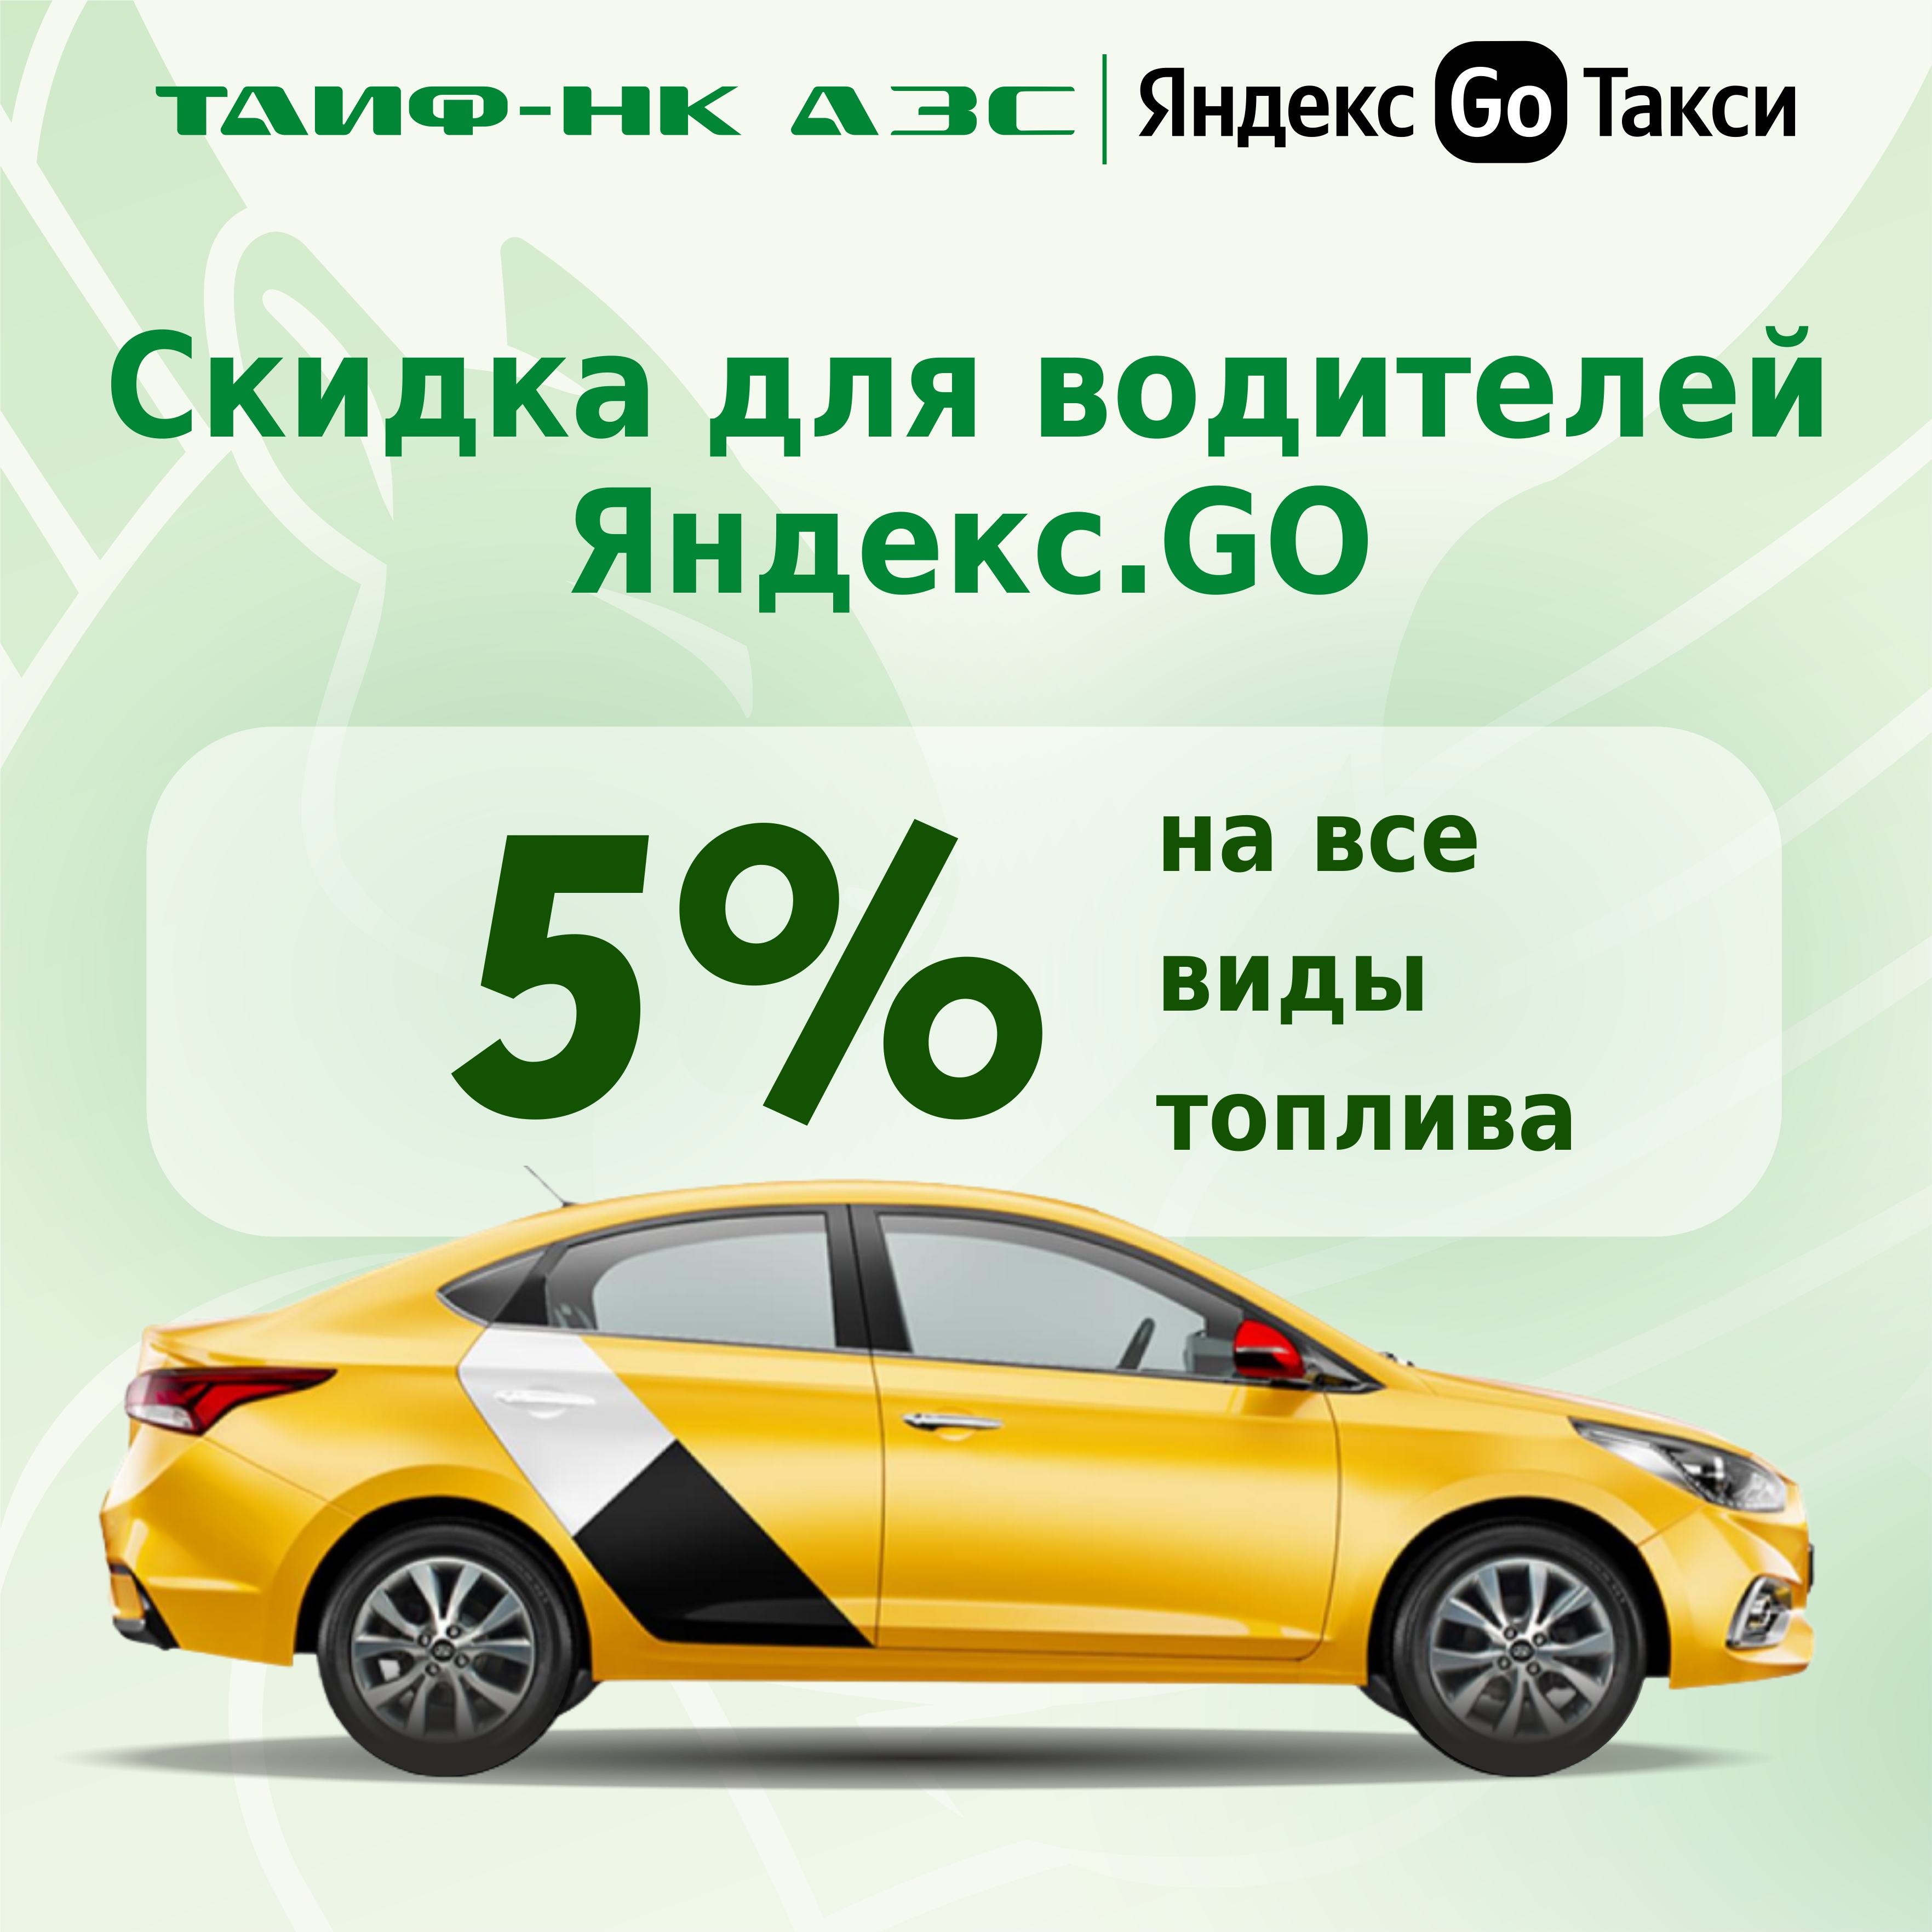 Продлеваем скидки для водителей "Яндекс.GO"